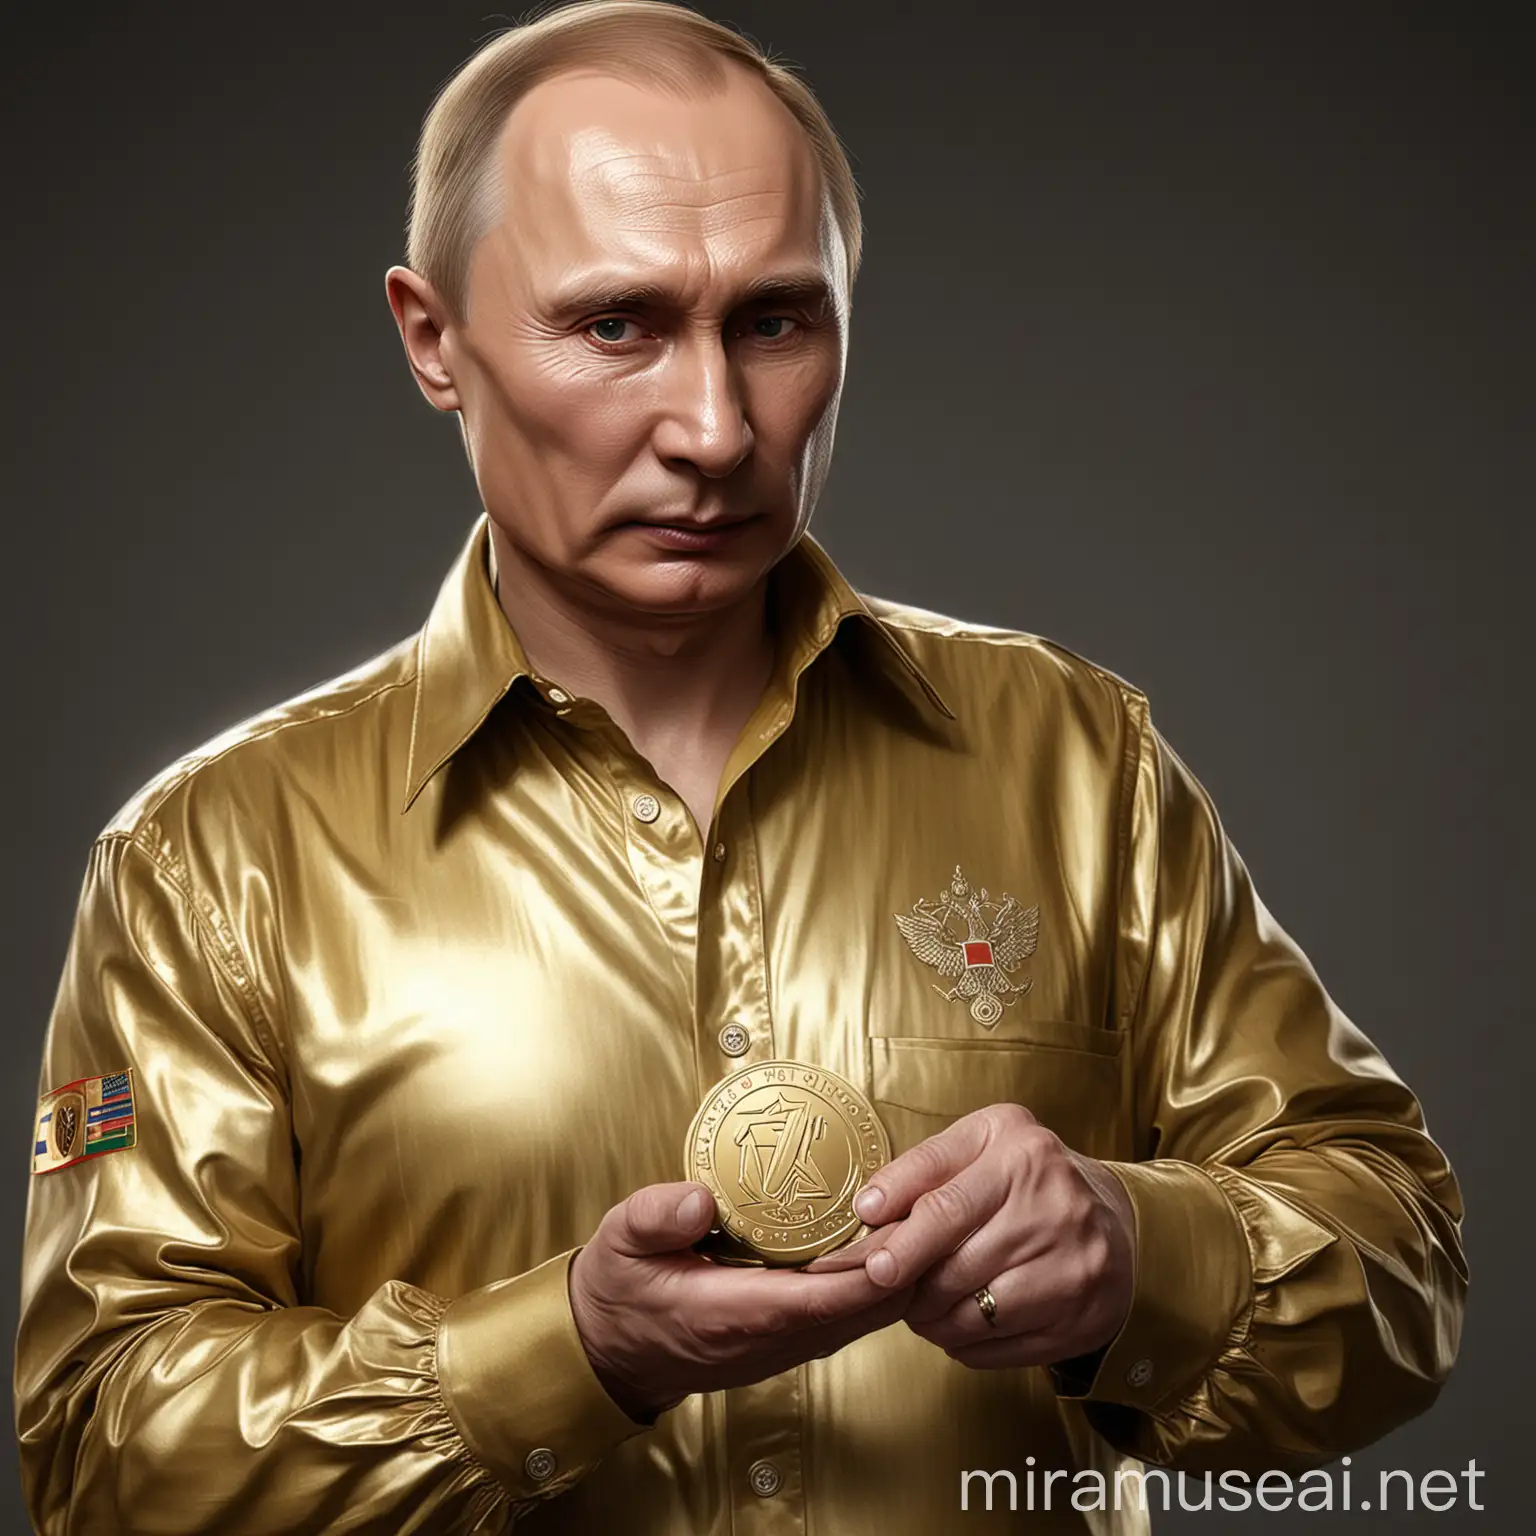 Vladimir Putin Wearing Shining Gold Shirt Holding WOT Letter Logo Coin